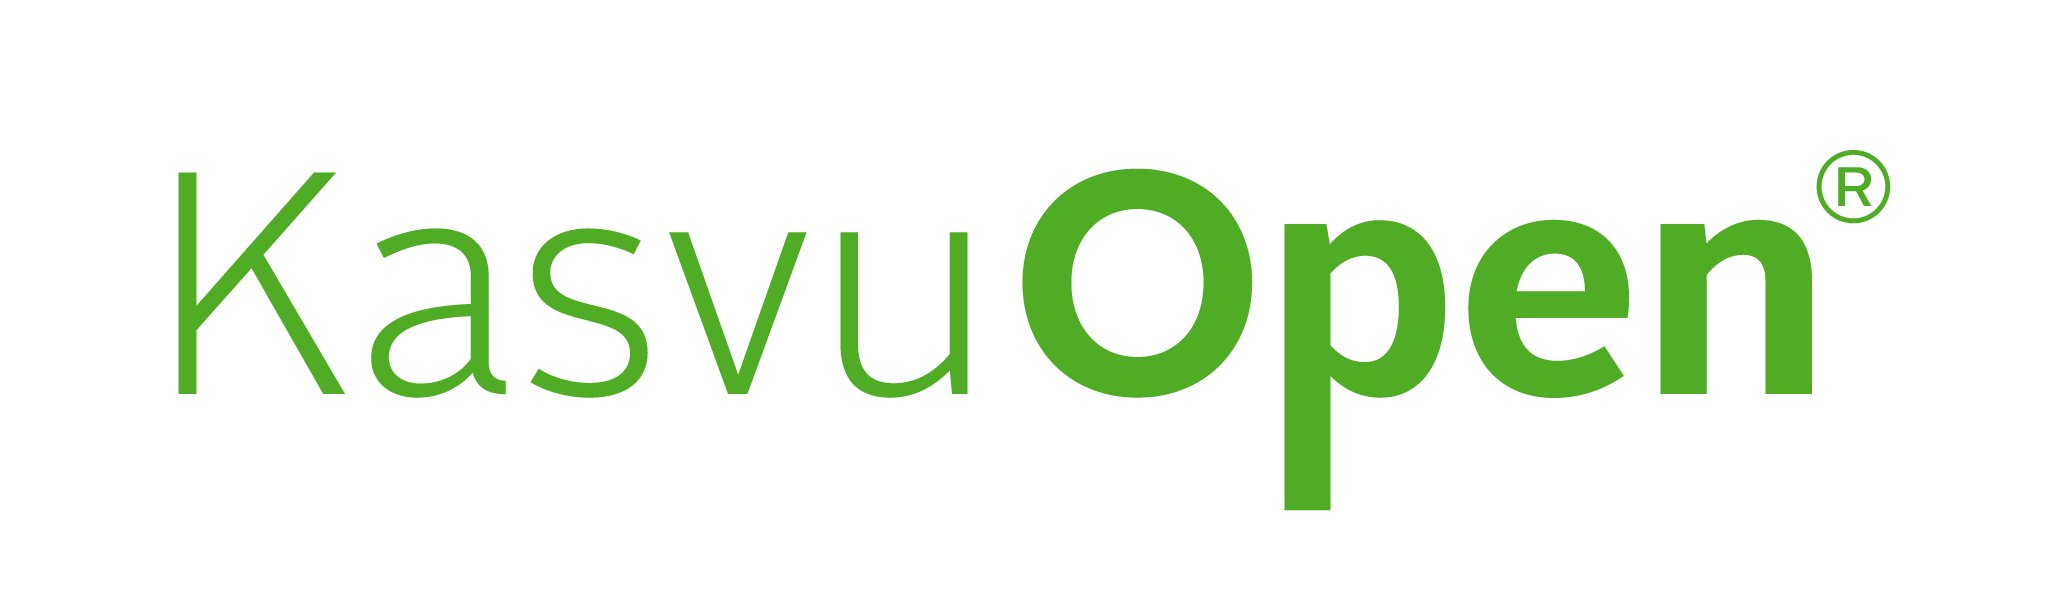 kasvu_open_logo_2015-web-01